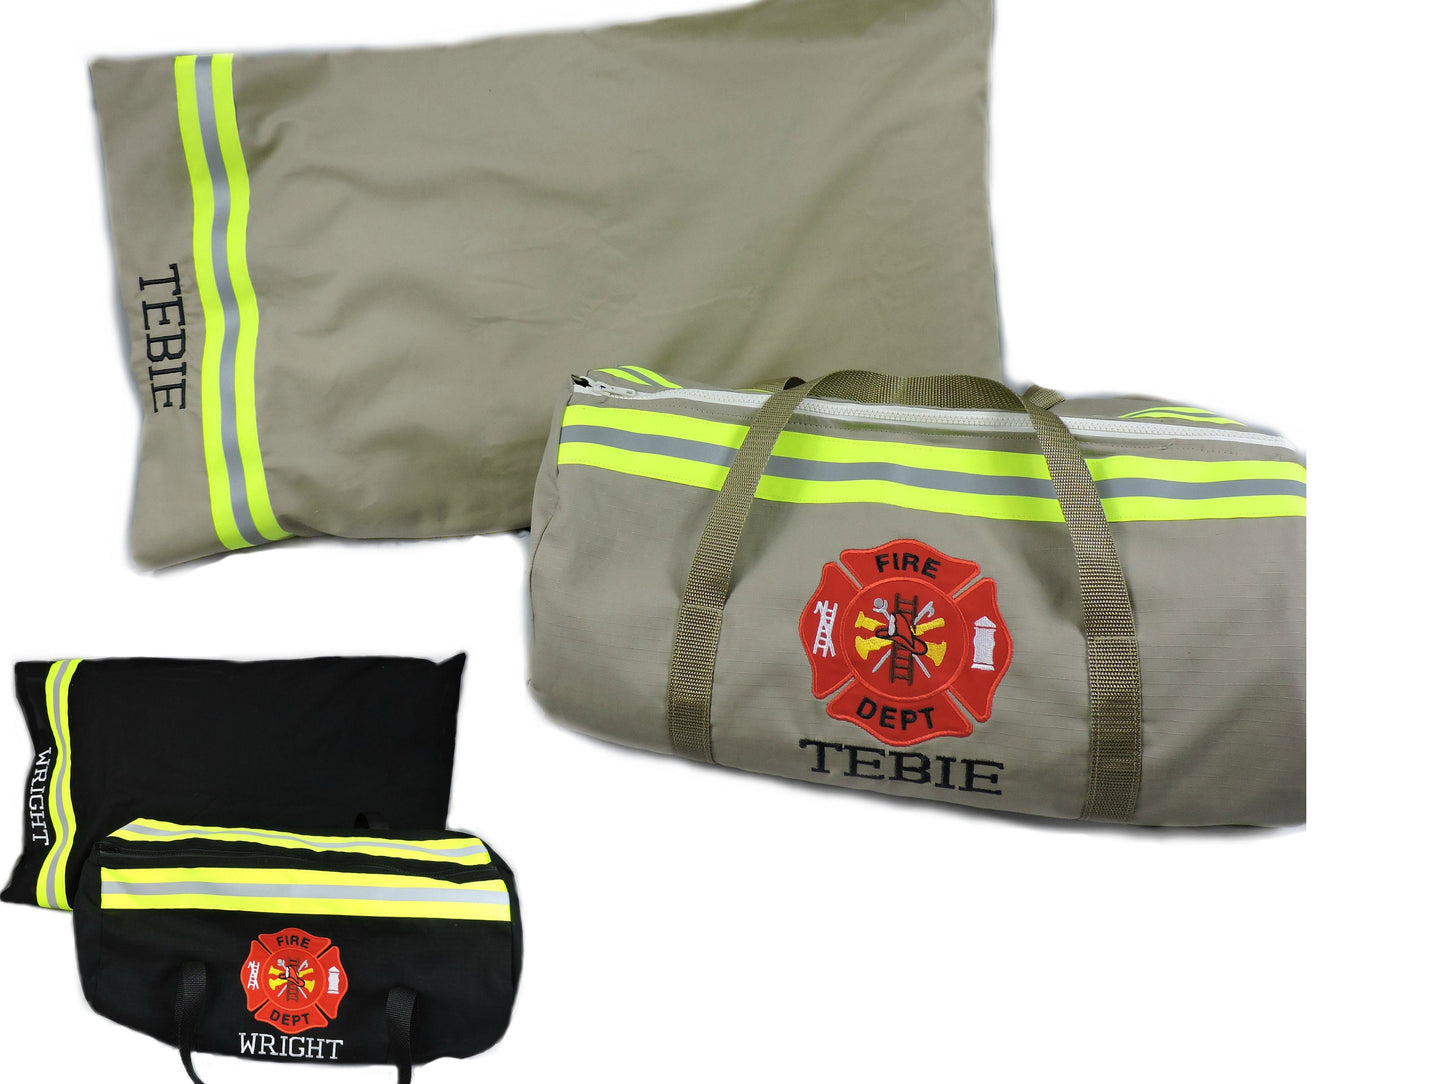 Firefighter Duffel Bag and pillowcase gift set